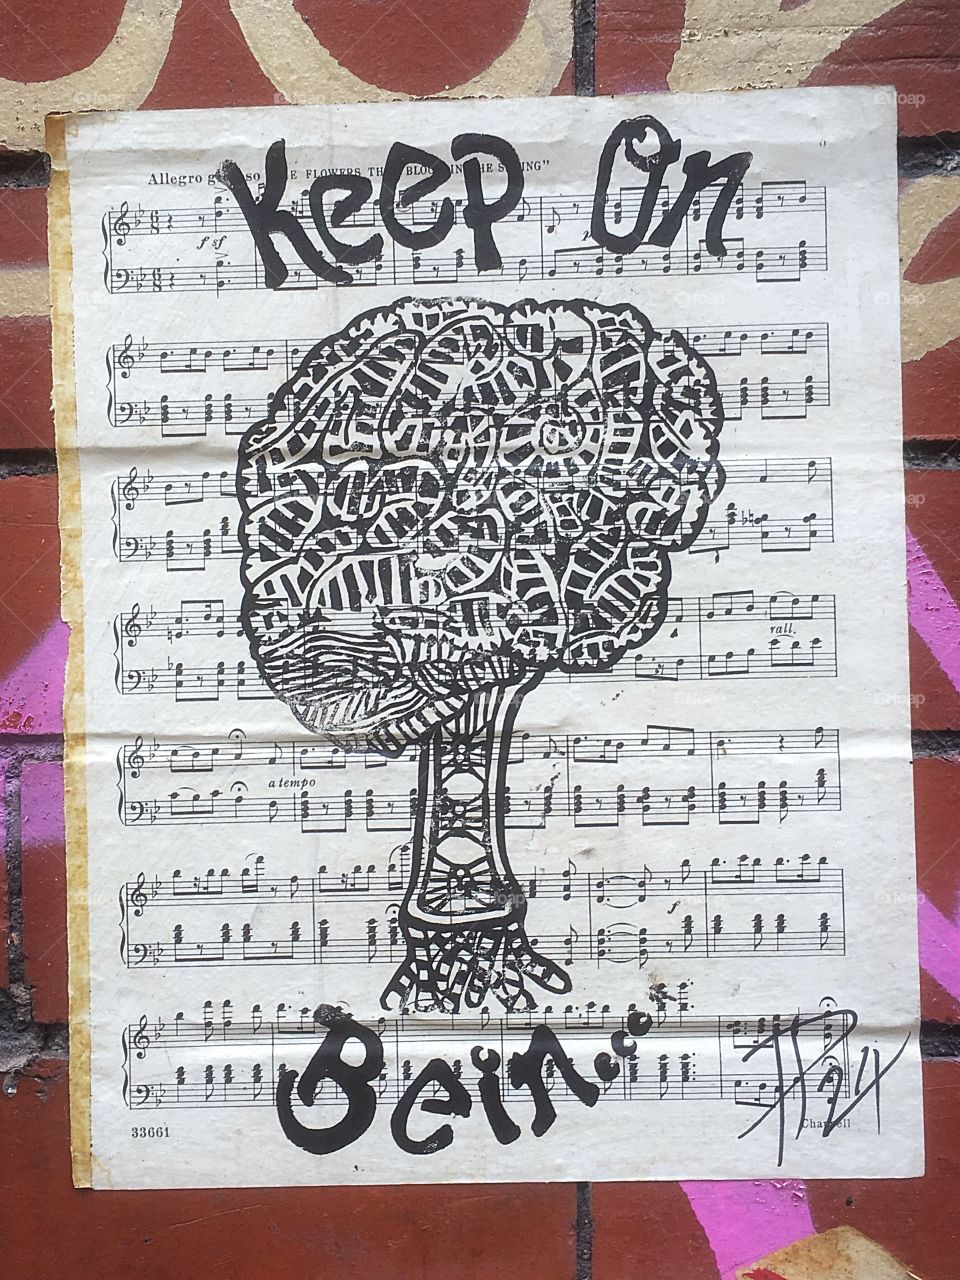 Keep on being sheet music paste street art